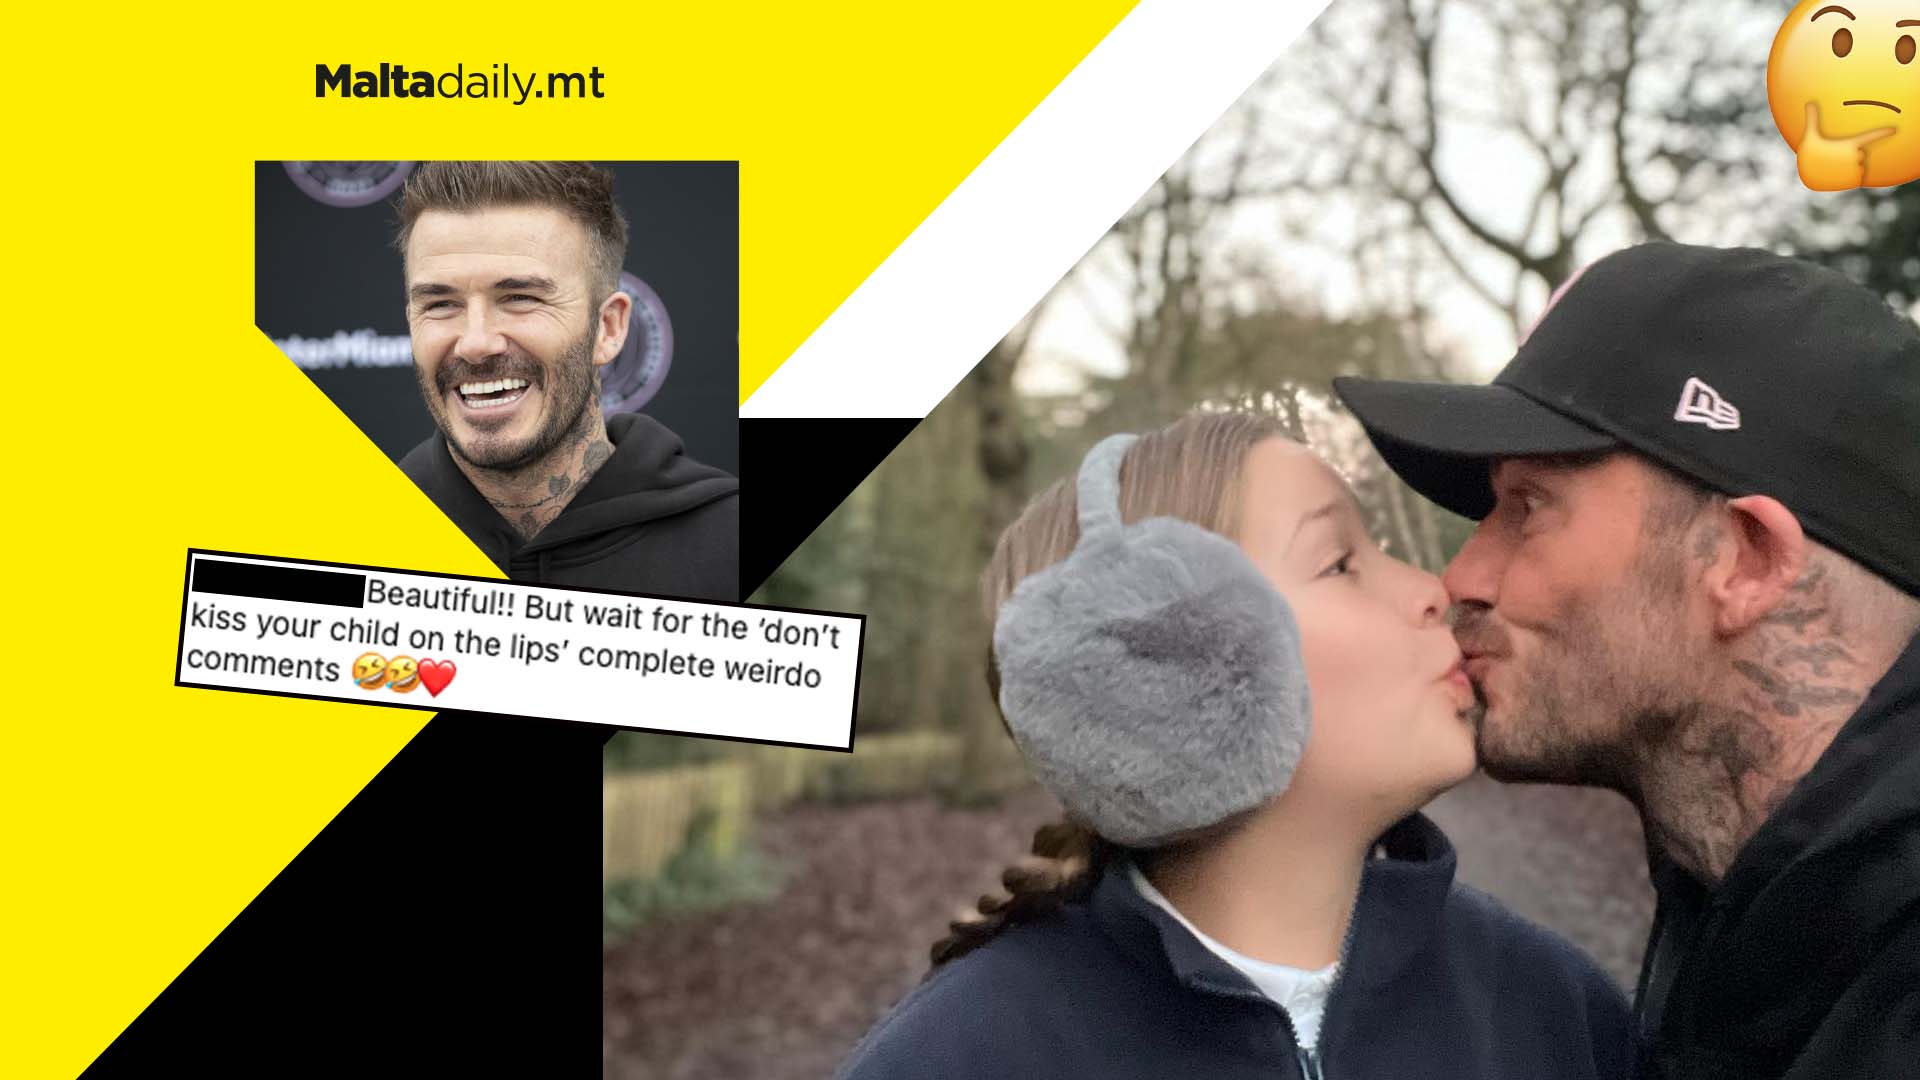 Online debate sparked after David Beckham kisses daughter Harper on lips